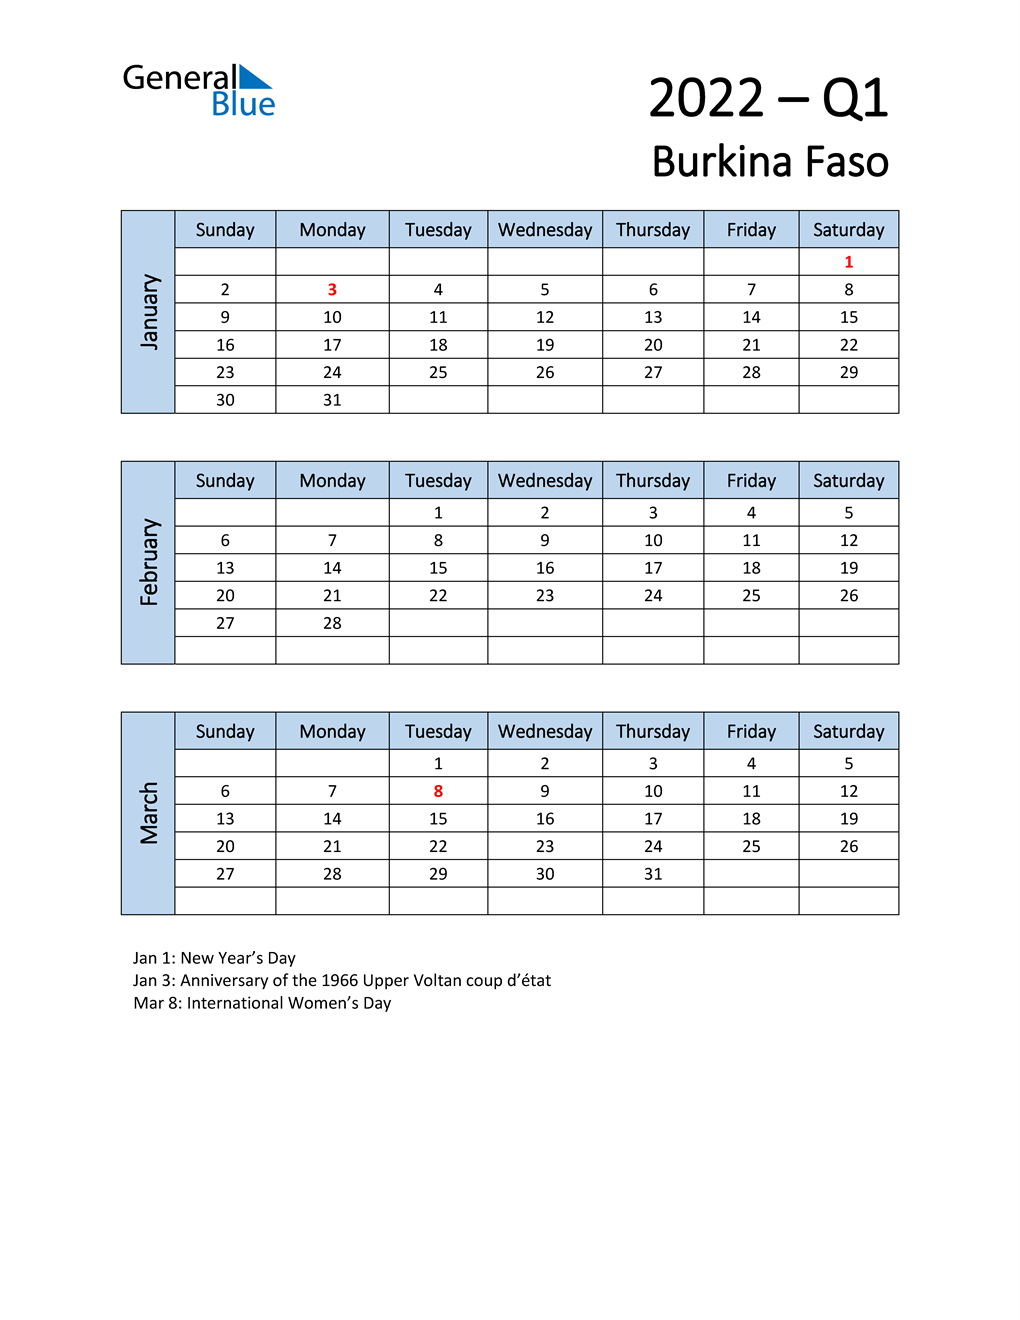  Free Q1 2022 Calendar for Burkina Faso